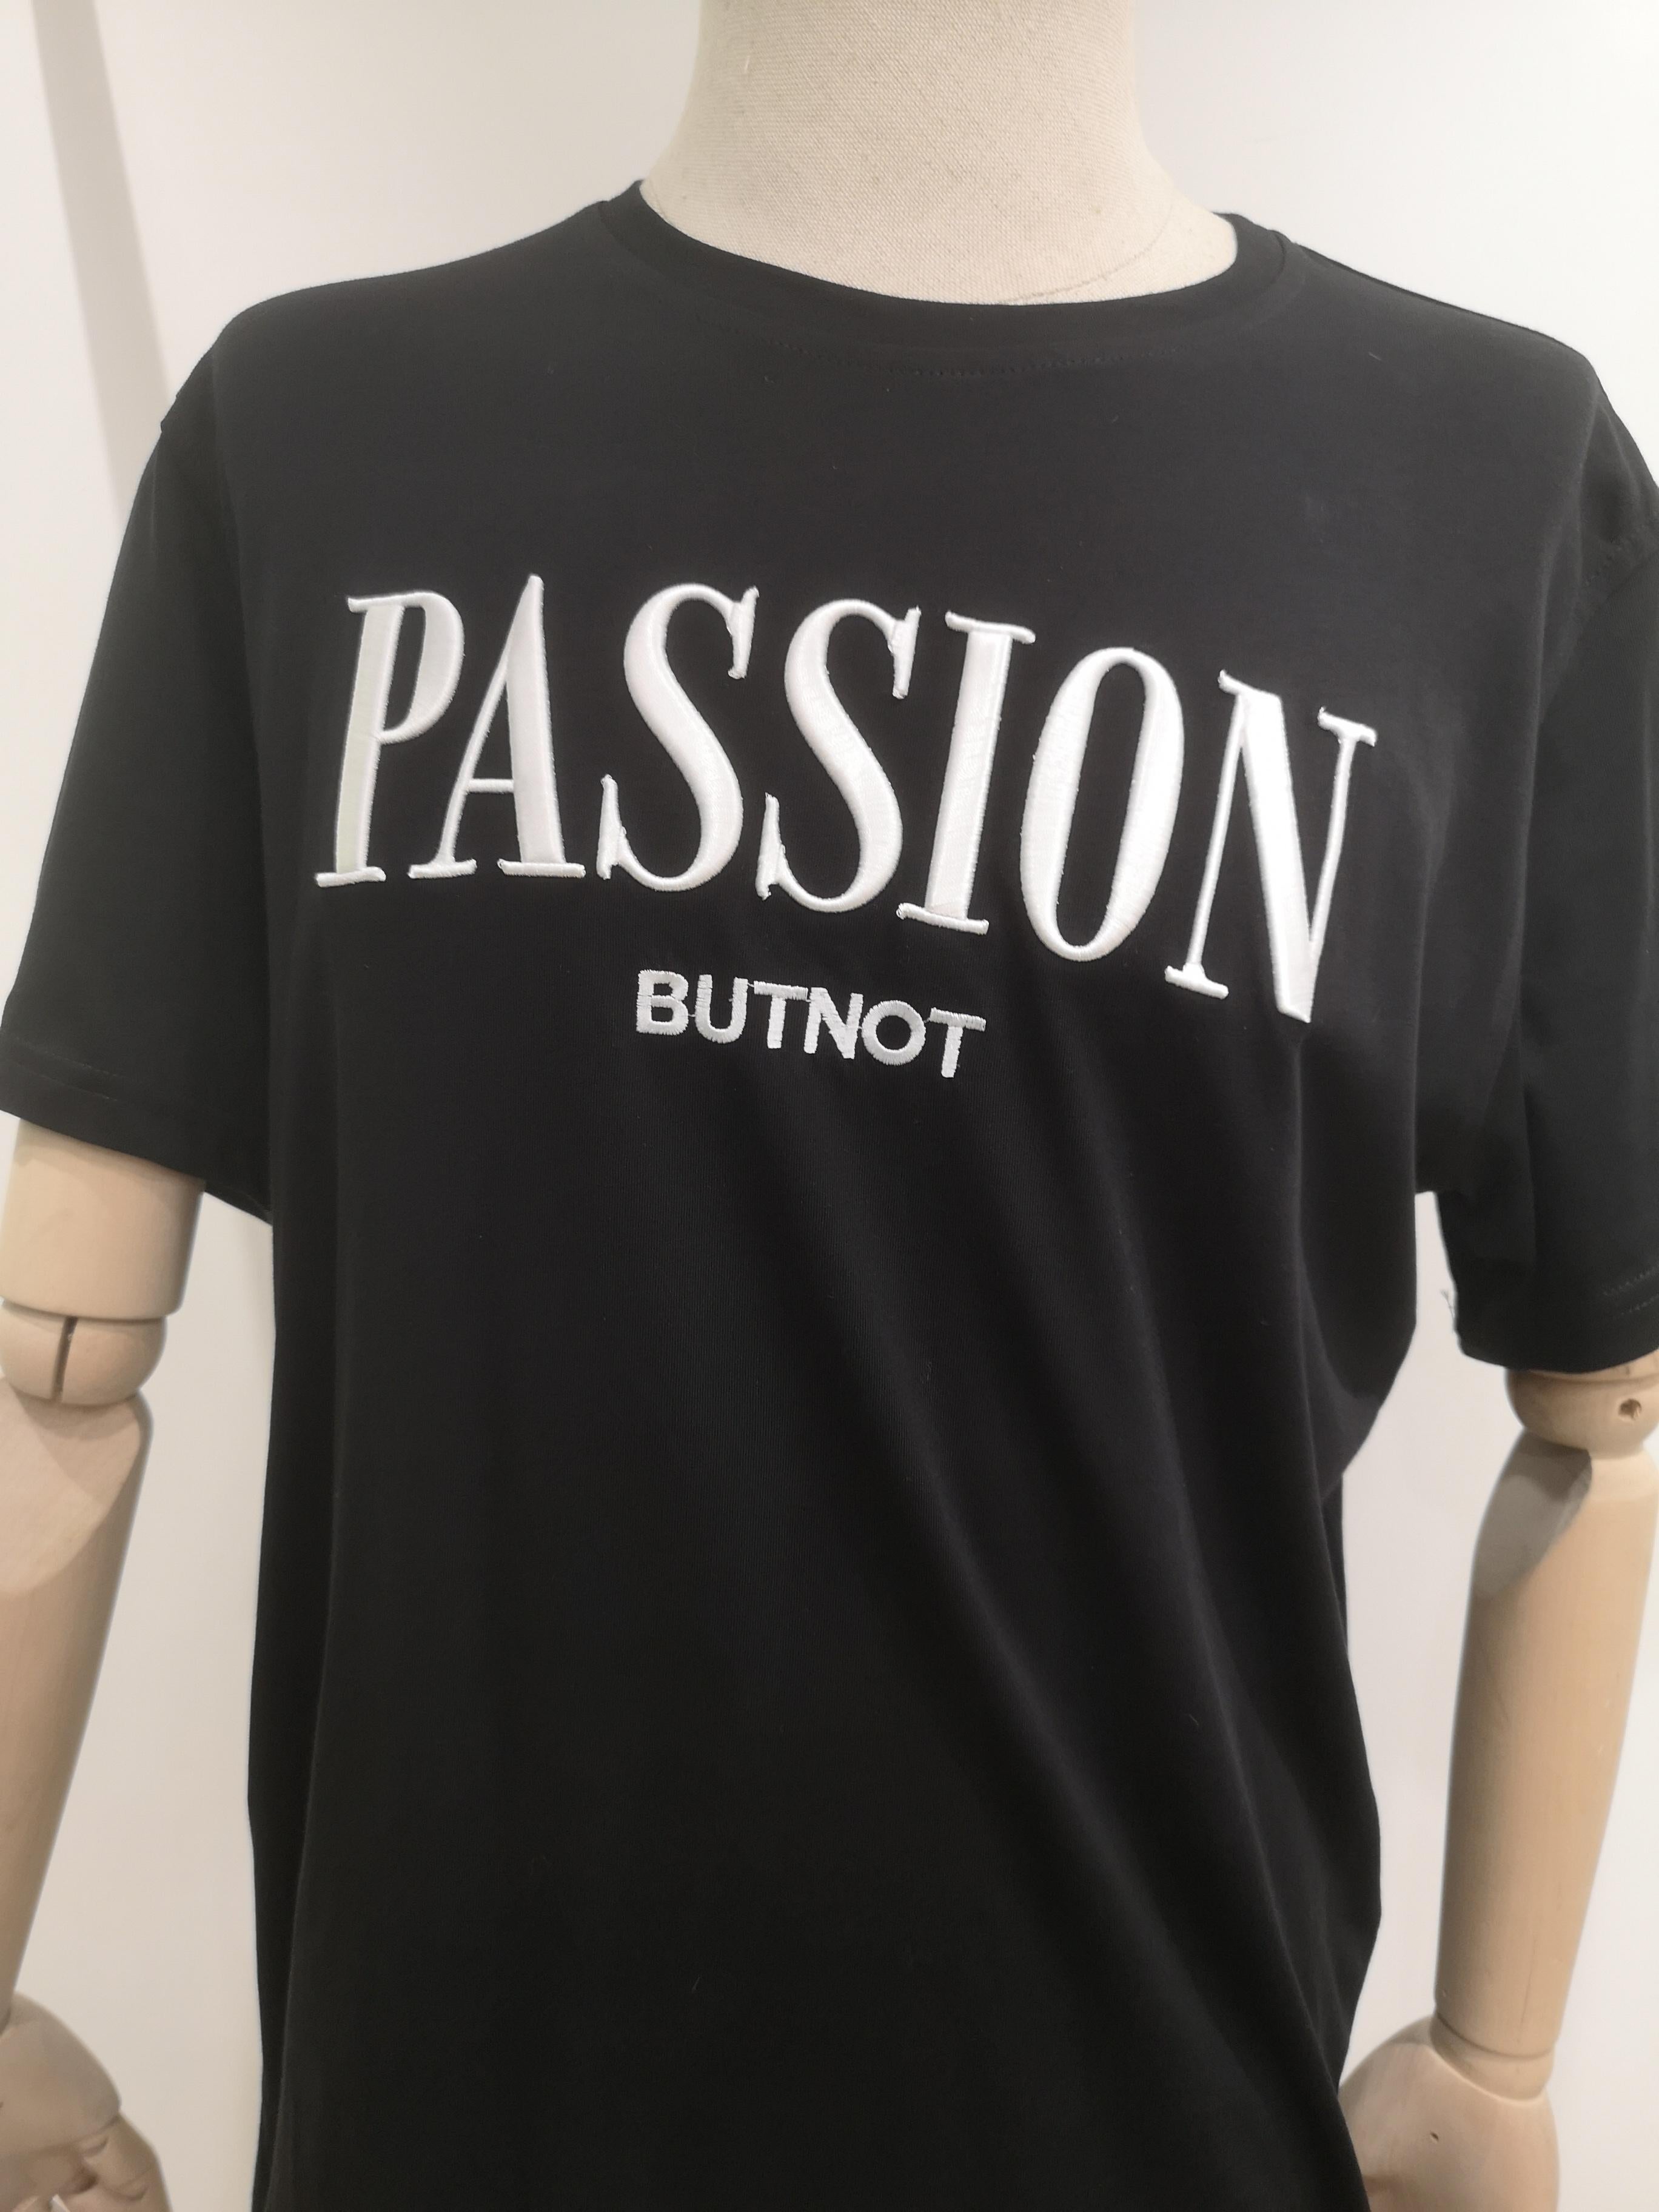 Black cotton Passion T-shirt NWOT
Size XL